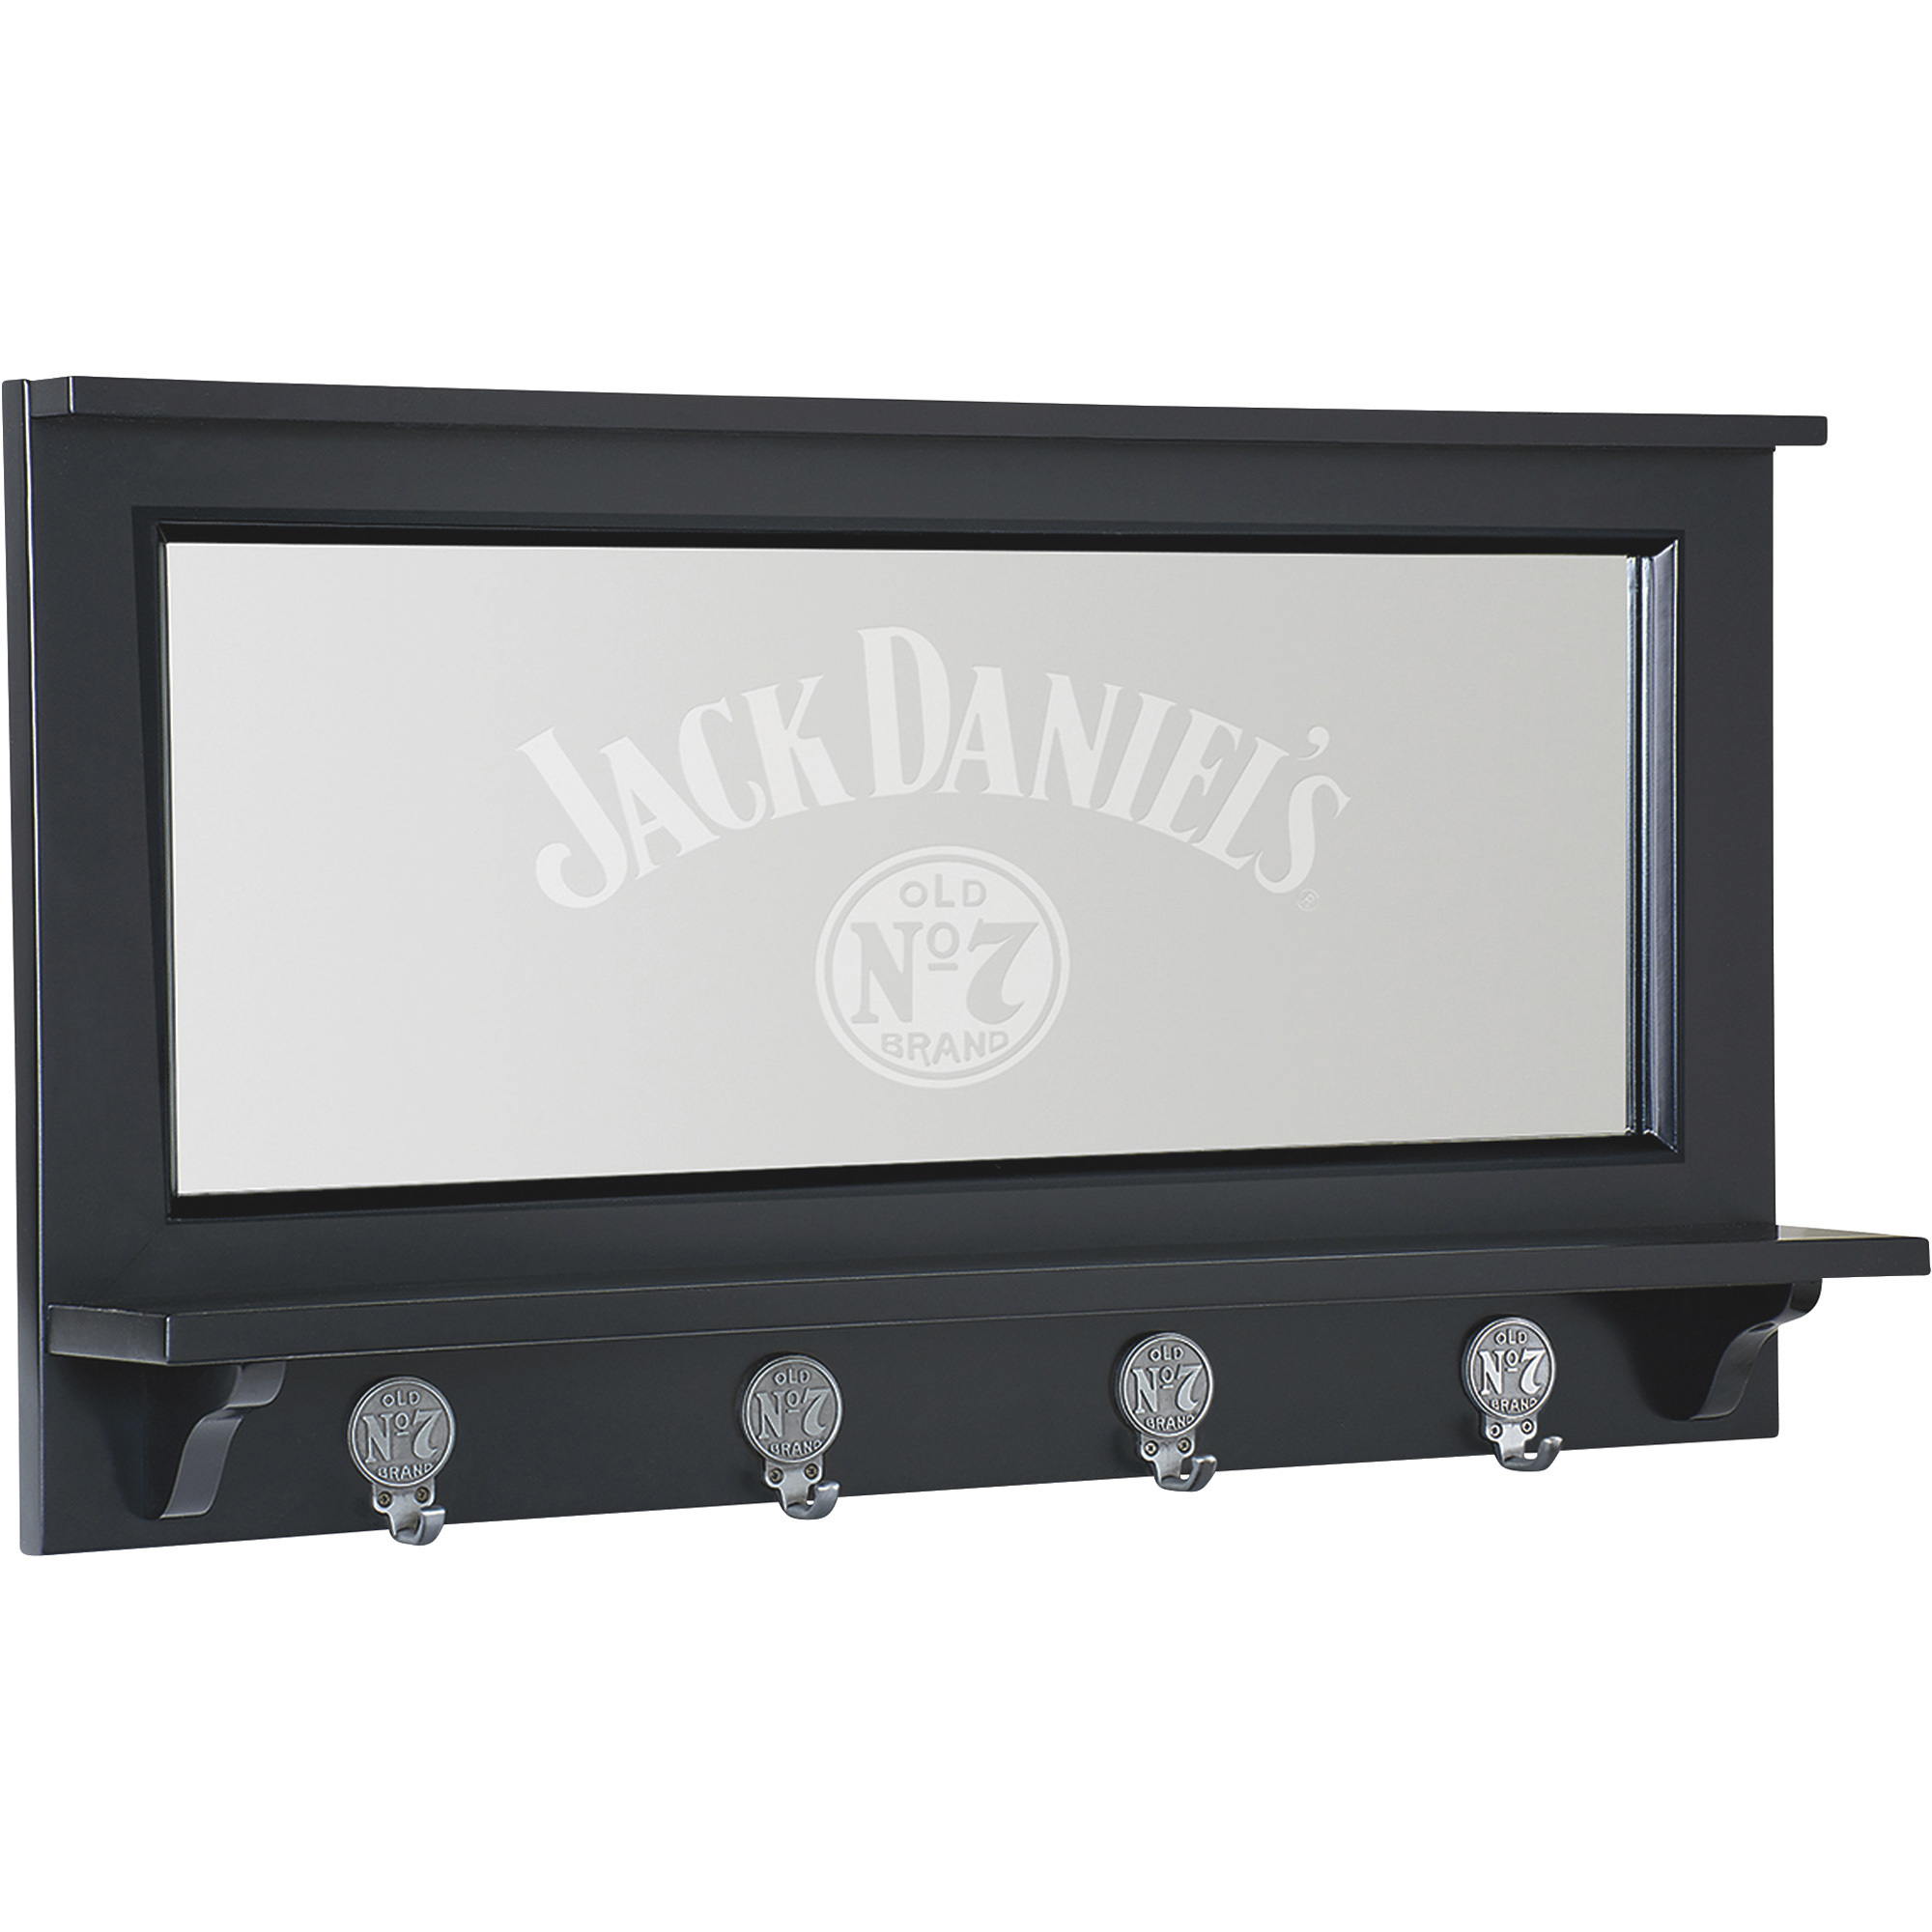 Jack Daniel's Old No. 7 Pub Mirror, Model JD-35200 -  Jack Daniels